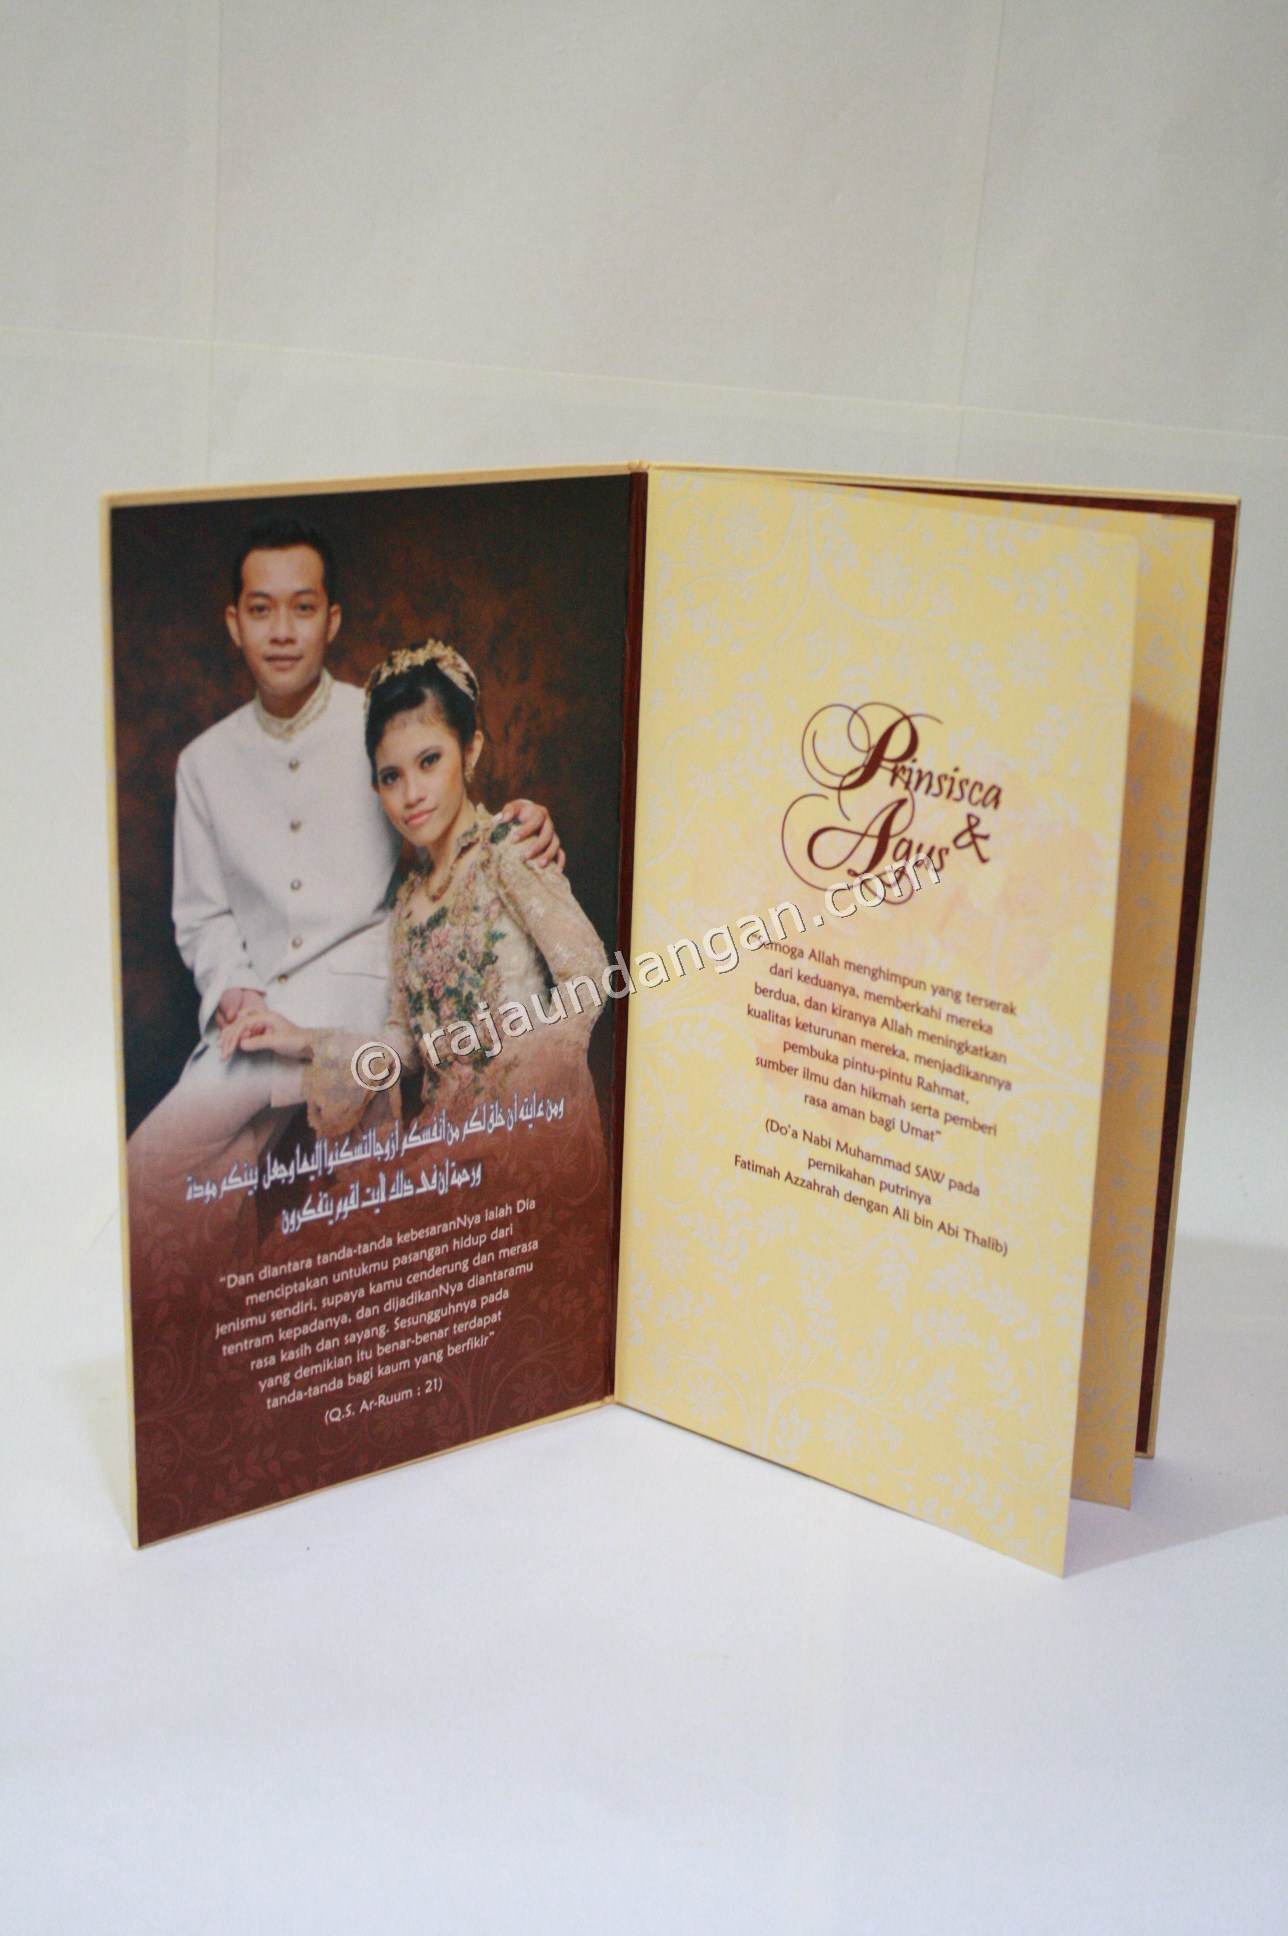 Contoh Kartu Undangan Pernikahan Hardcover Prinsisca dan Agus 4 - Percetakan Wedding Invitations Simple dan Elegan di Kalijudan